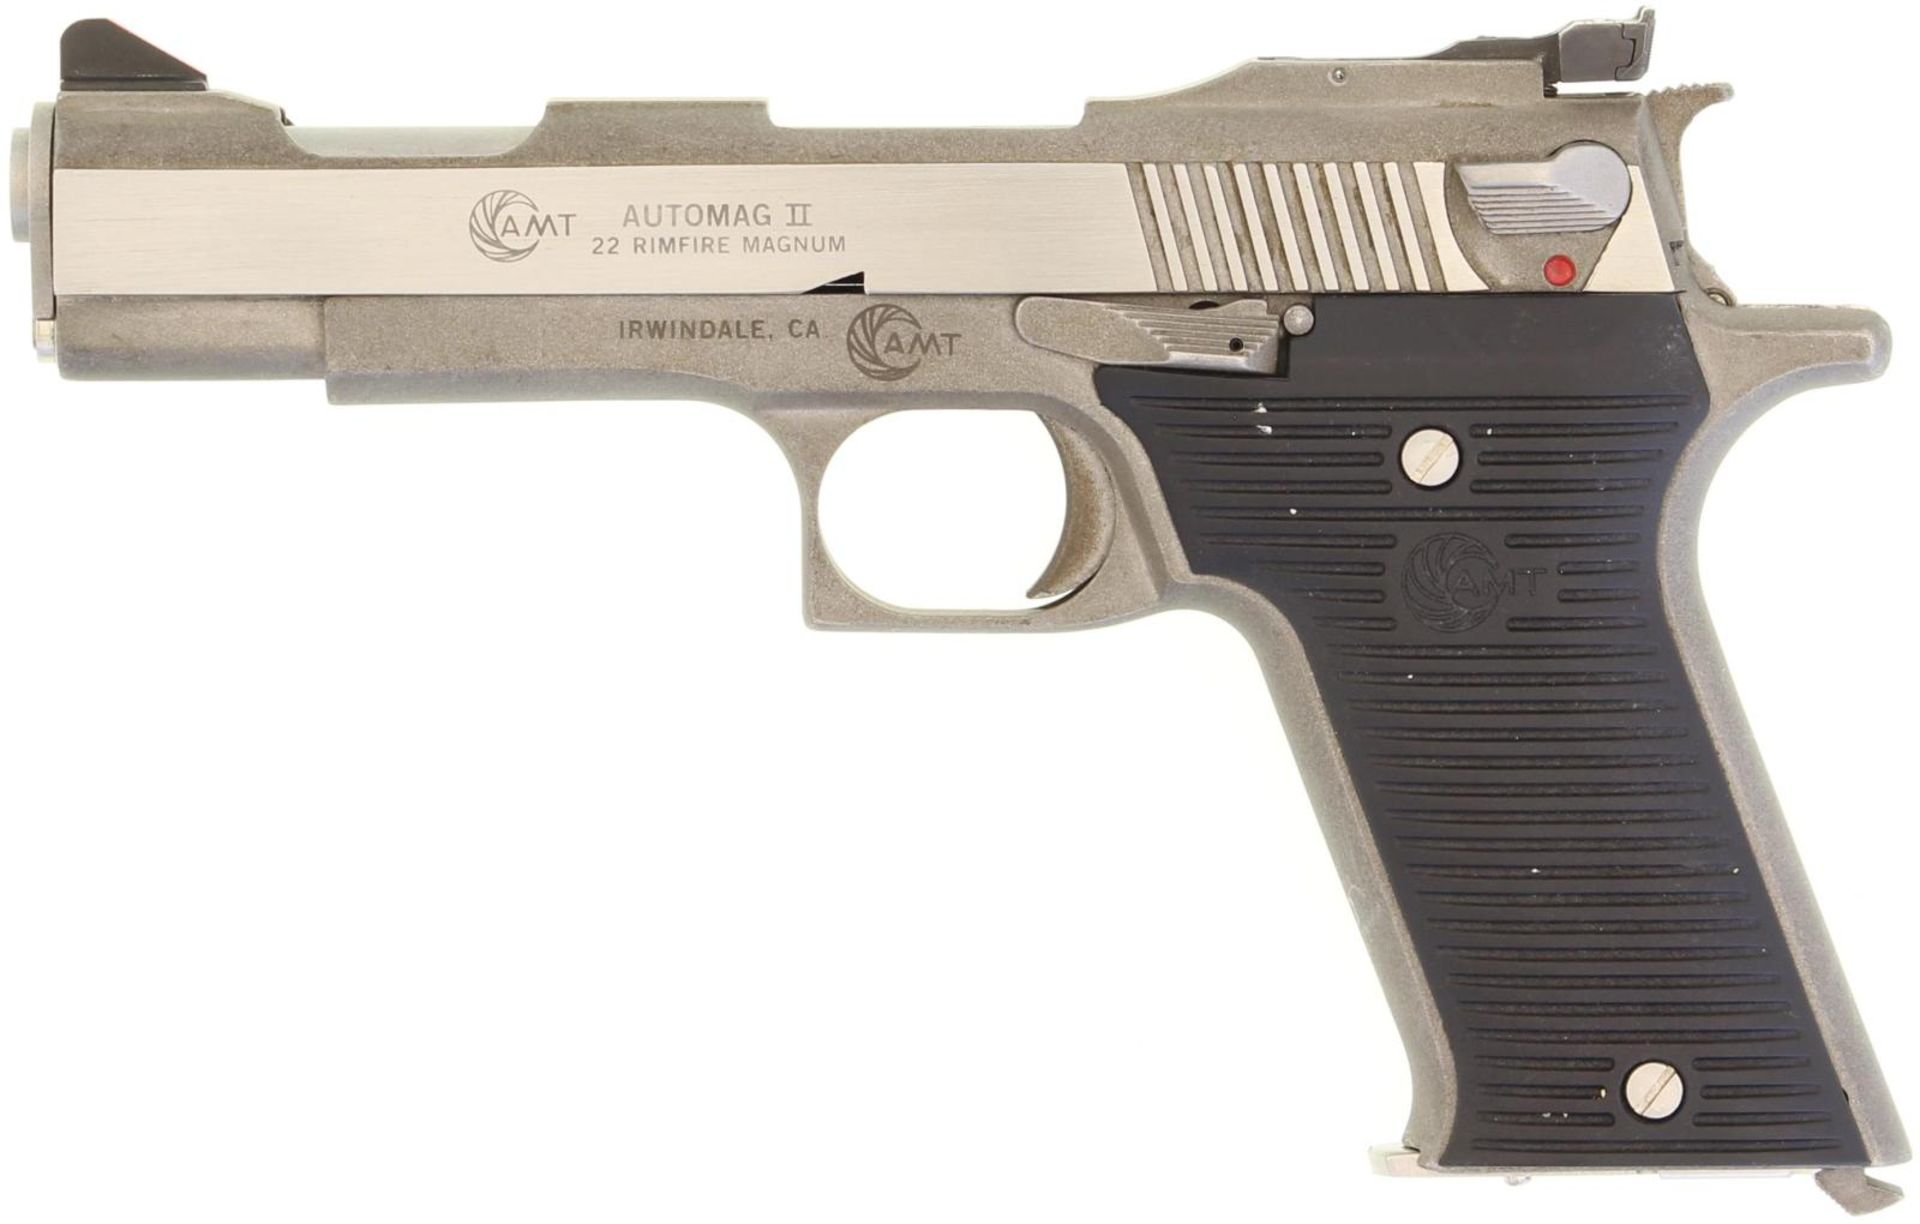 Pistole, AMT AutoMag II, Kal. .22Mag. Aus Stahlguss gefertigte Waffe mit SA-Abzug. Griffstück und